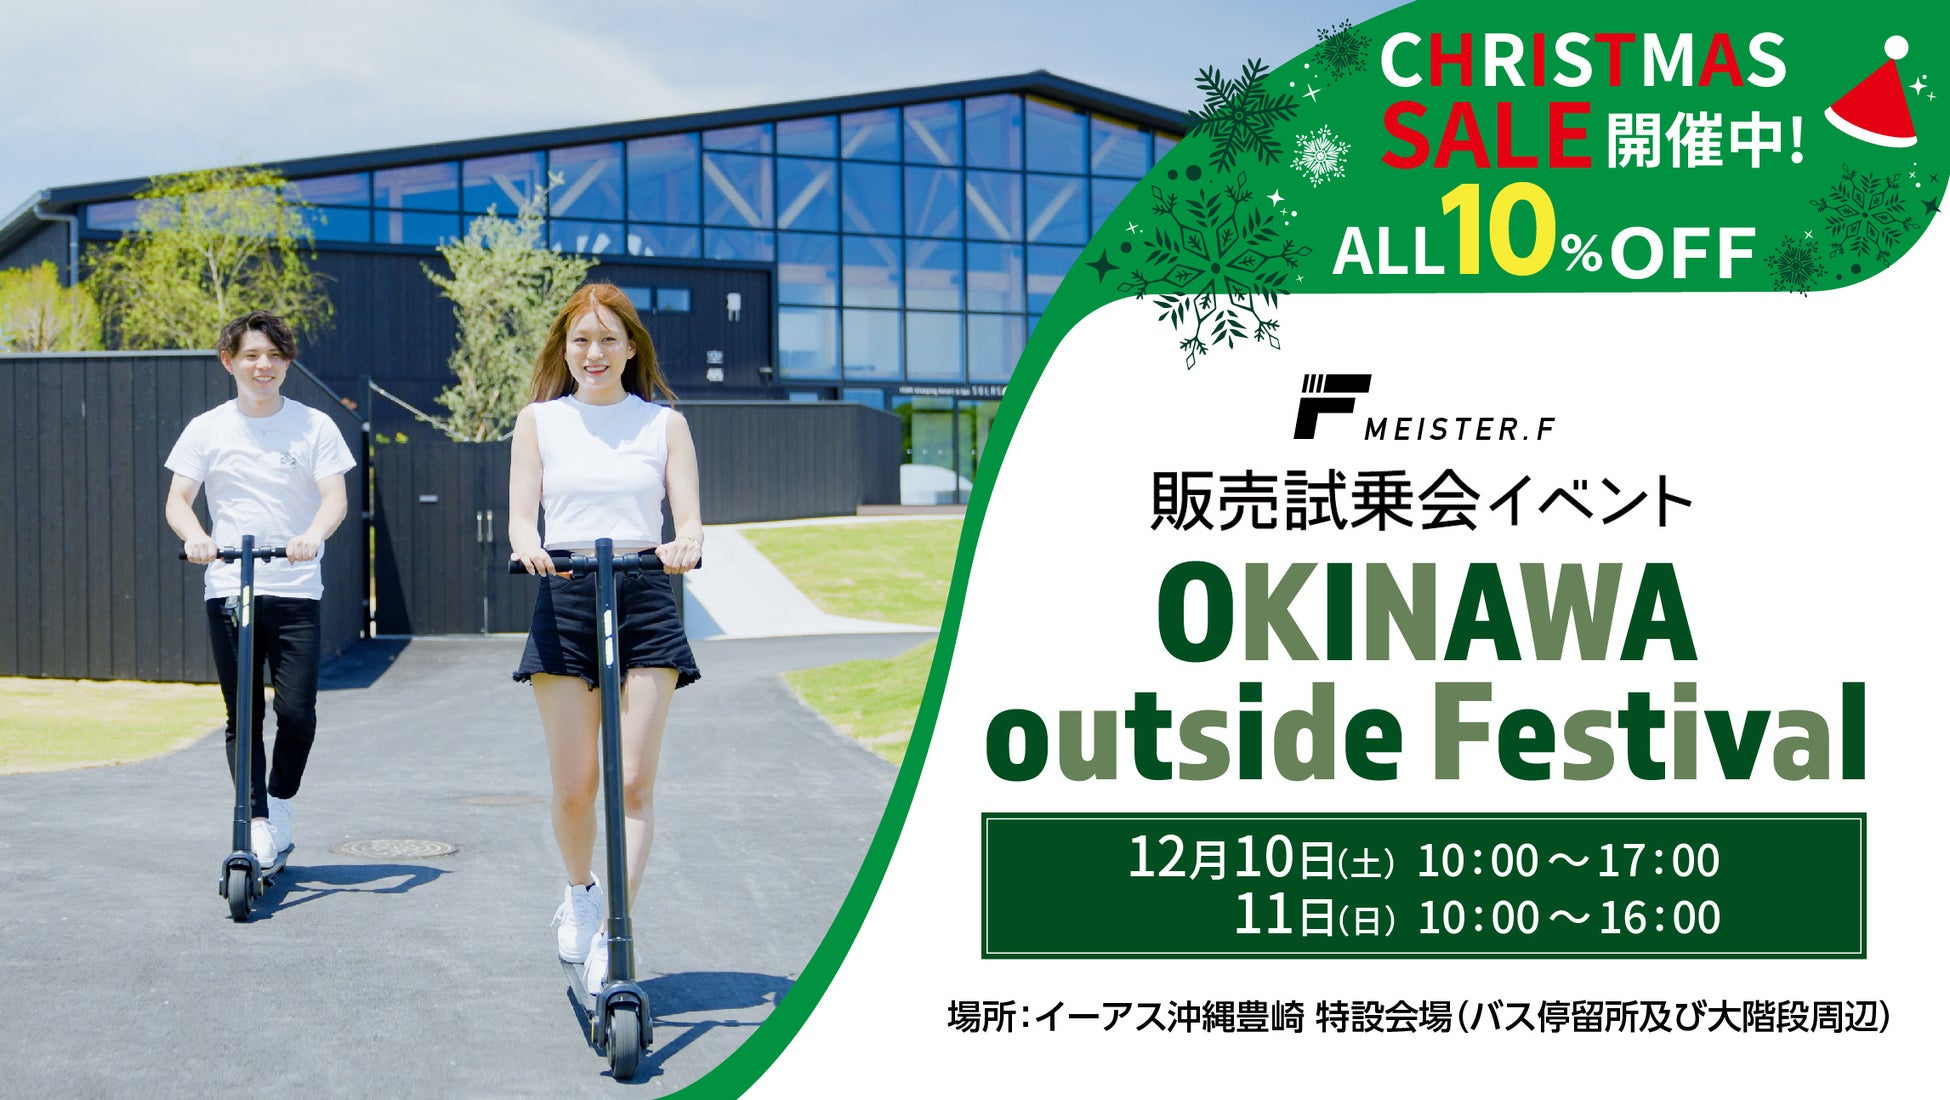 MEISTER.Fは電動モビリティのクリスマスセールと試乗会を開催。12月10日(土)・11日(日) イーアス沖縄豊崎にてアウトドアイベント「OKINAWA outside Festival」に参加。のサブ画像1